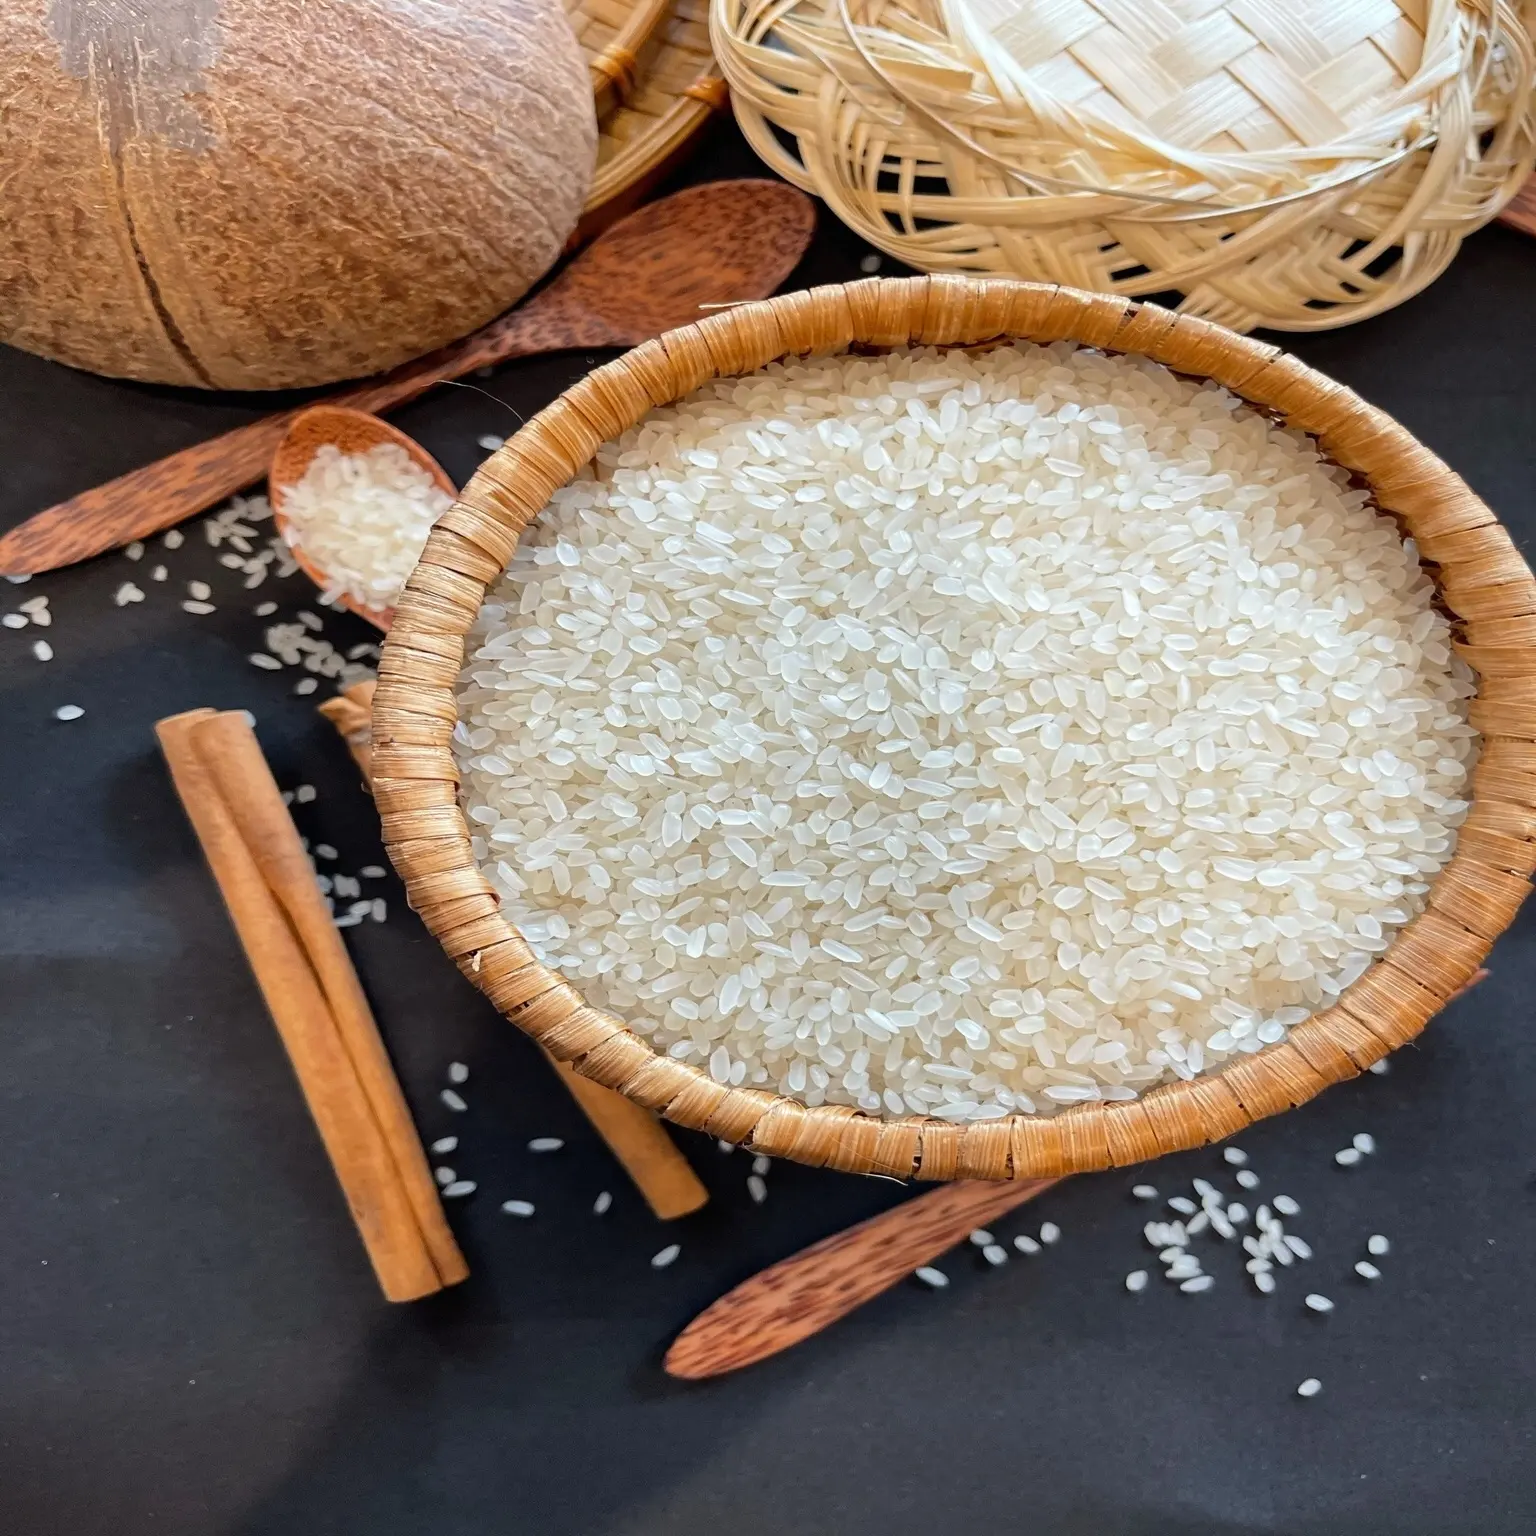 تفرضه اليابان أرز أبيض-أفضل سعر عرض لجميع المستوردين 2022 /+ 84979031744 MS. يوري